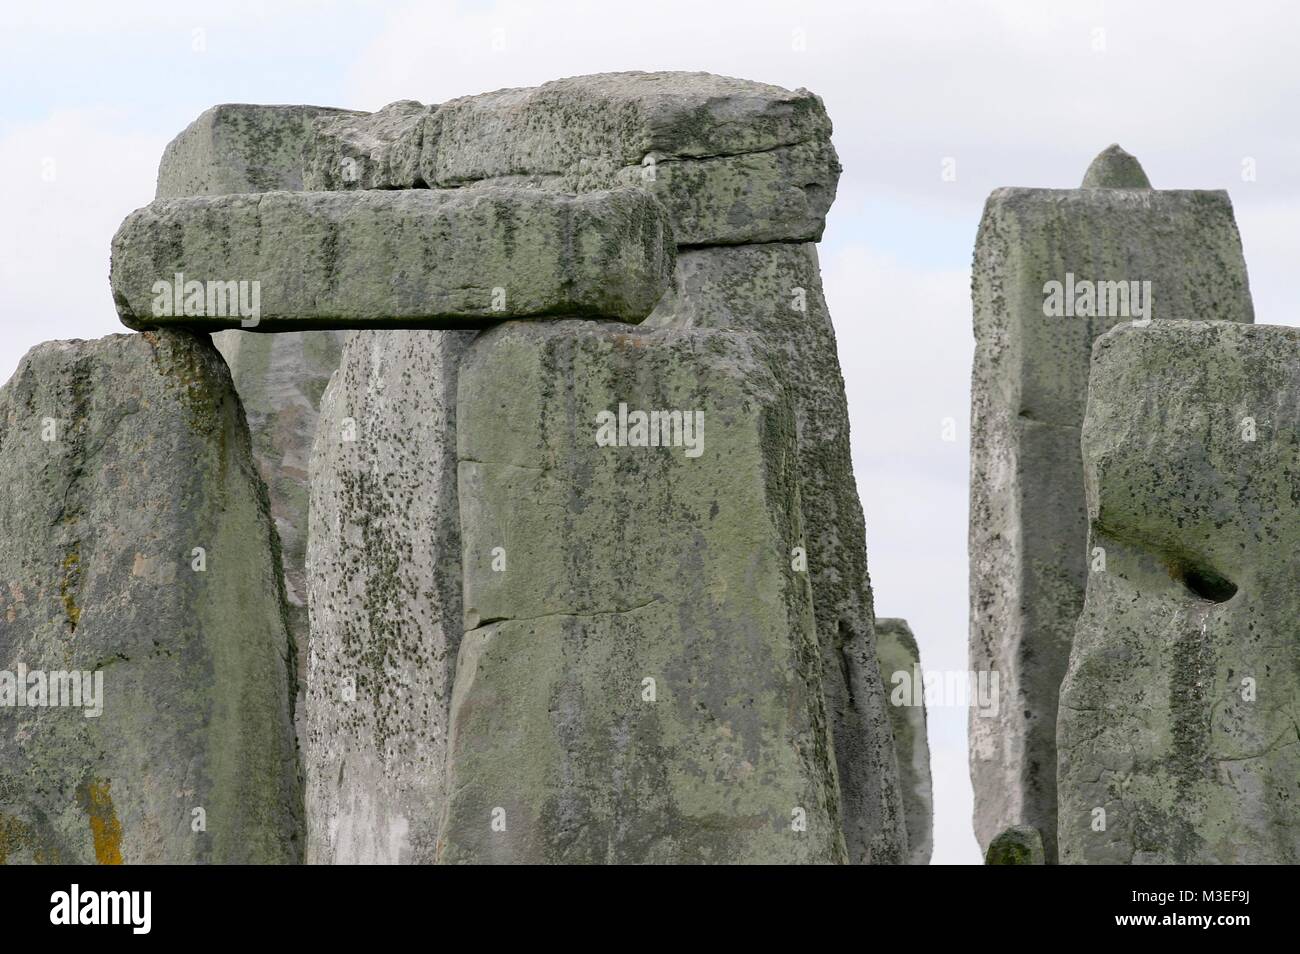 STONEHENGE Stonehenge ist ein in der Jungsteinzeit begründetes und mindestens bis in die Bronzezeit benutztes Bauwerk in der Nähe von Amesbury, en Wiltshire, Inglaterra, etwa 13 kilómetro nordwestlich von Salisbury. Es besteht aus einer Grabenanlage, die eine Megalithstruktur umgibt, welche wiederum aus mehreren konzentrischen Steinkreisen gebildet wird. Foto de stock